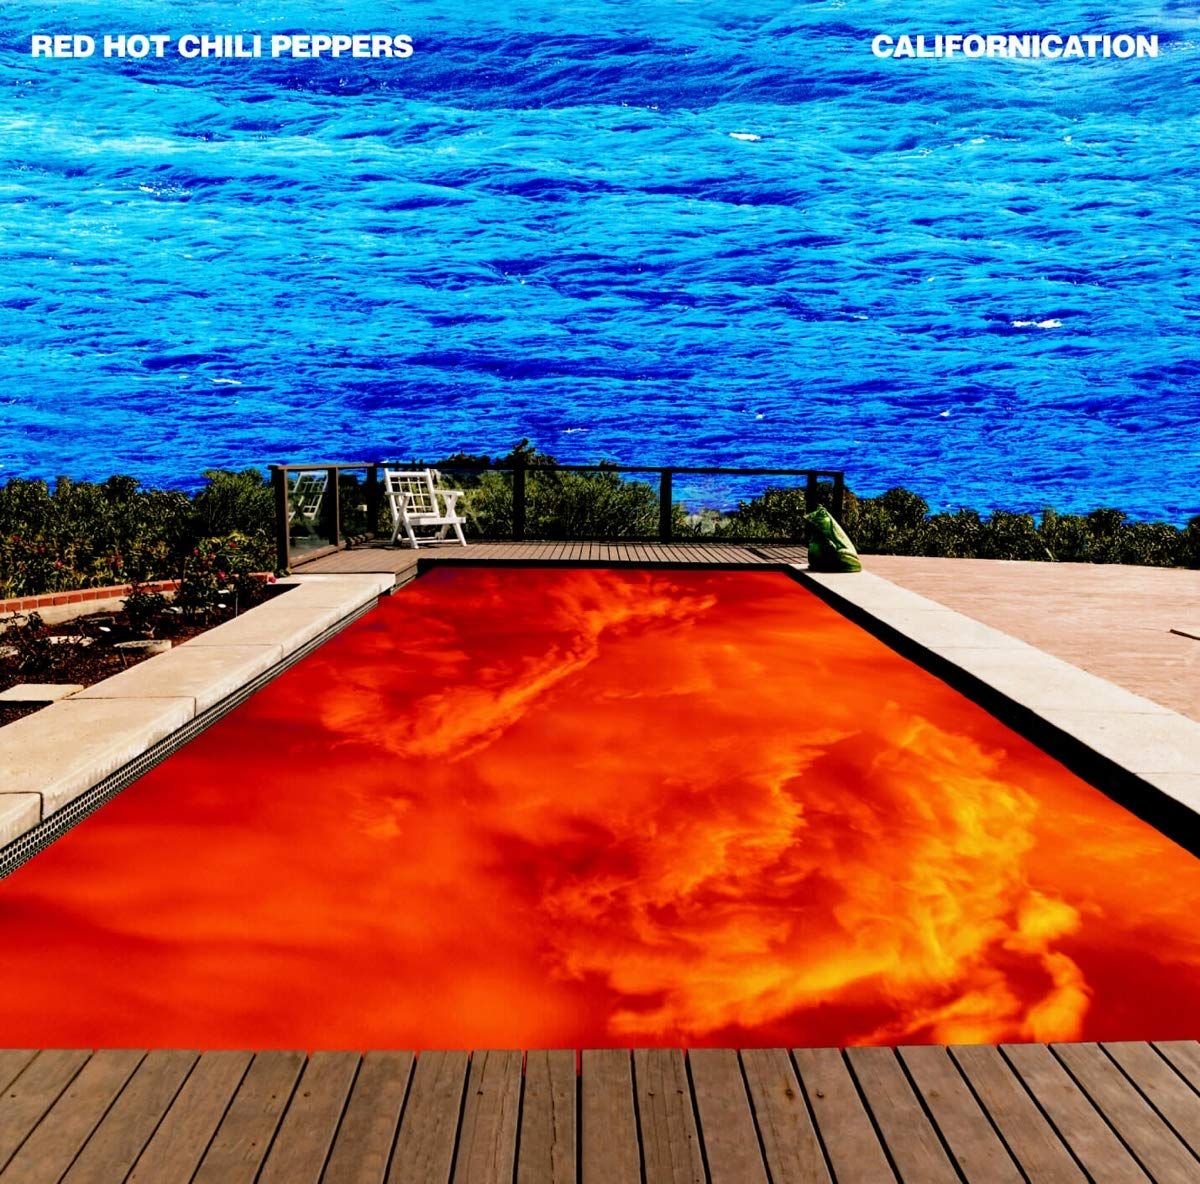 'Californication'-Clip auch als Videogame veröffentlicht